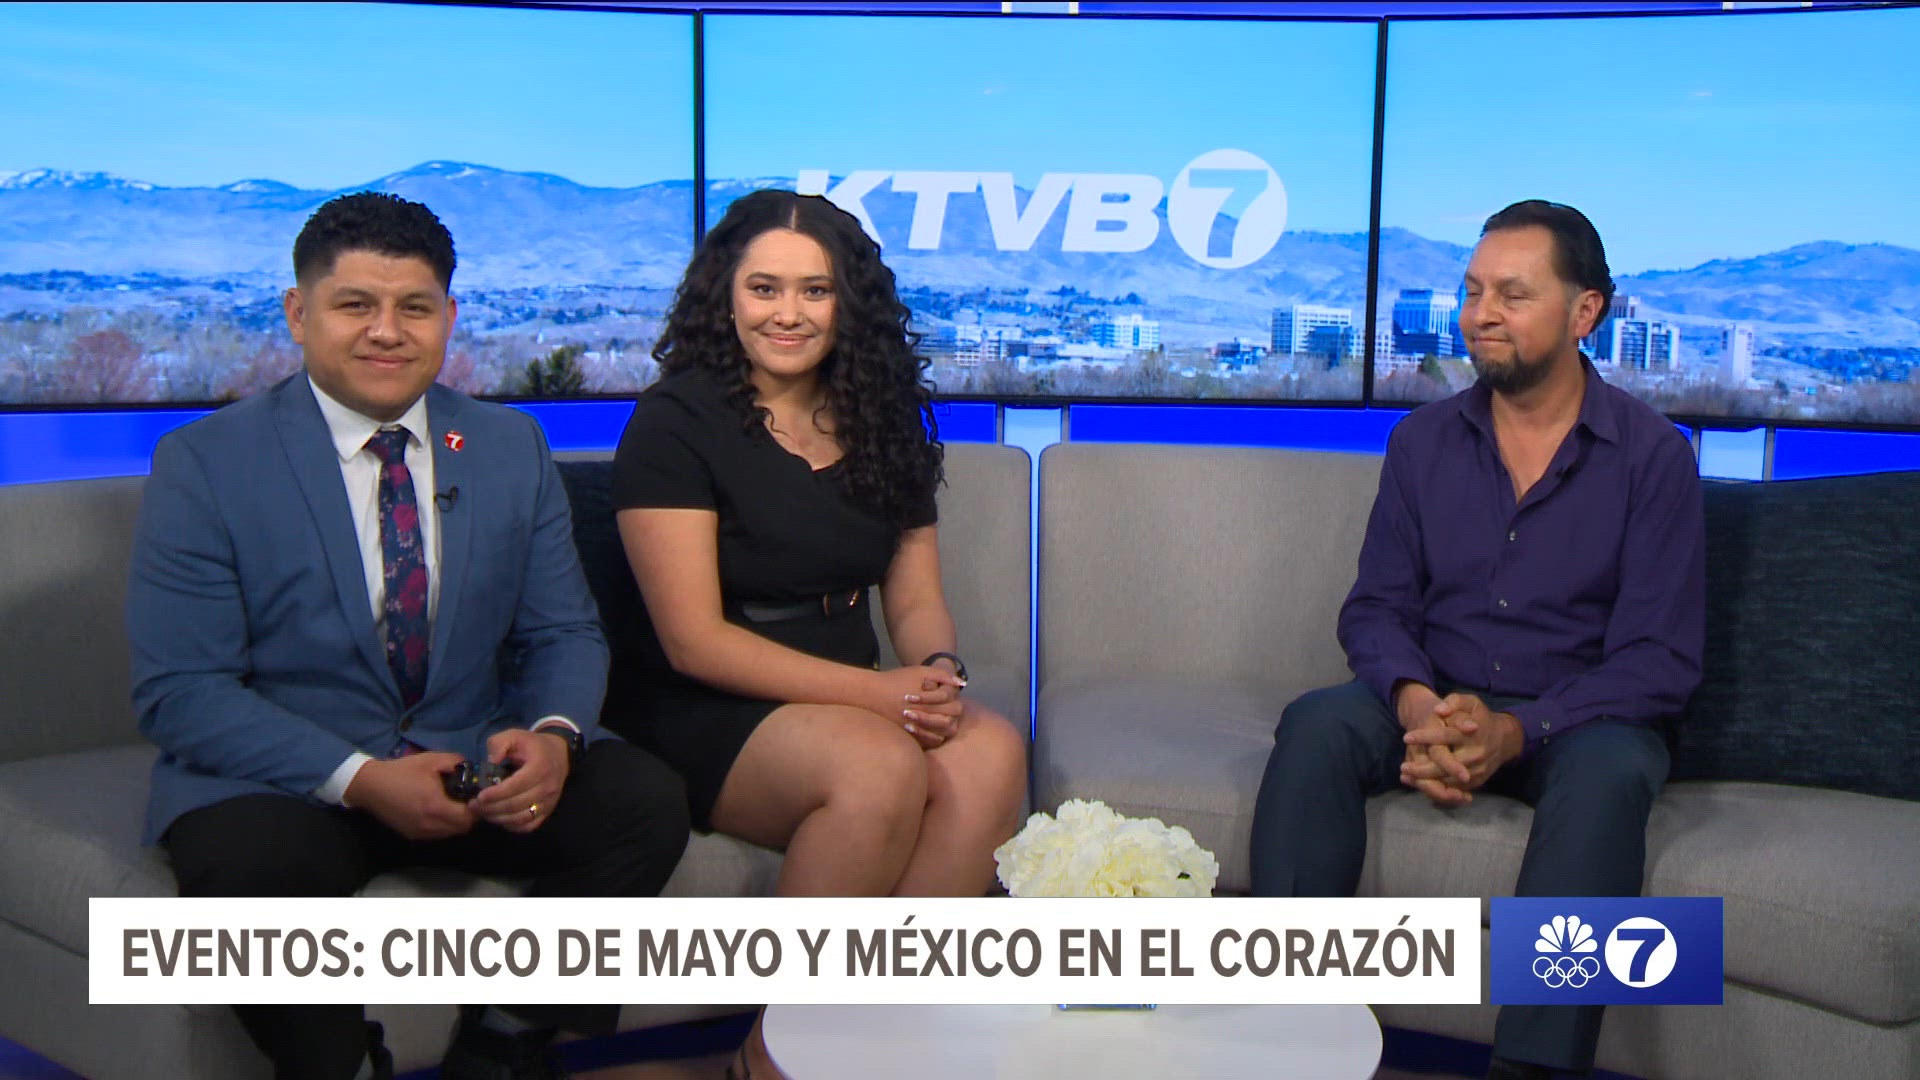 El equipo KTVB en Español traer las noticias en Español.